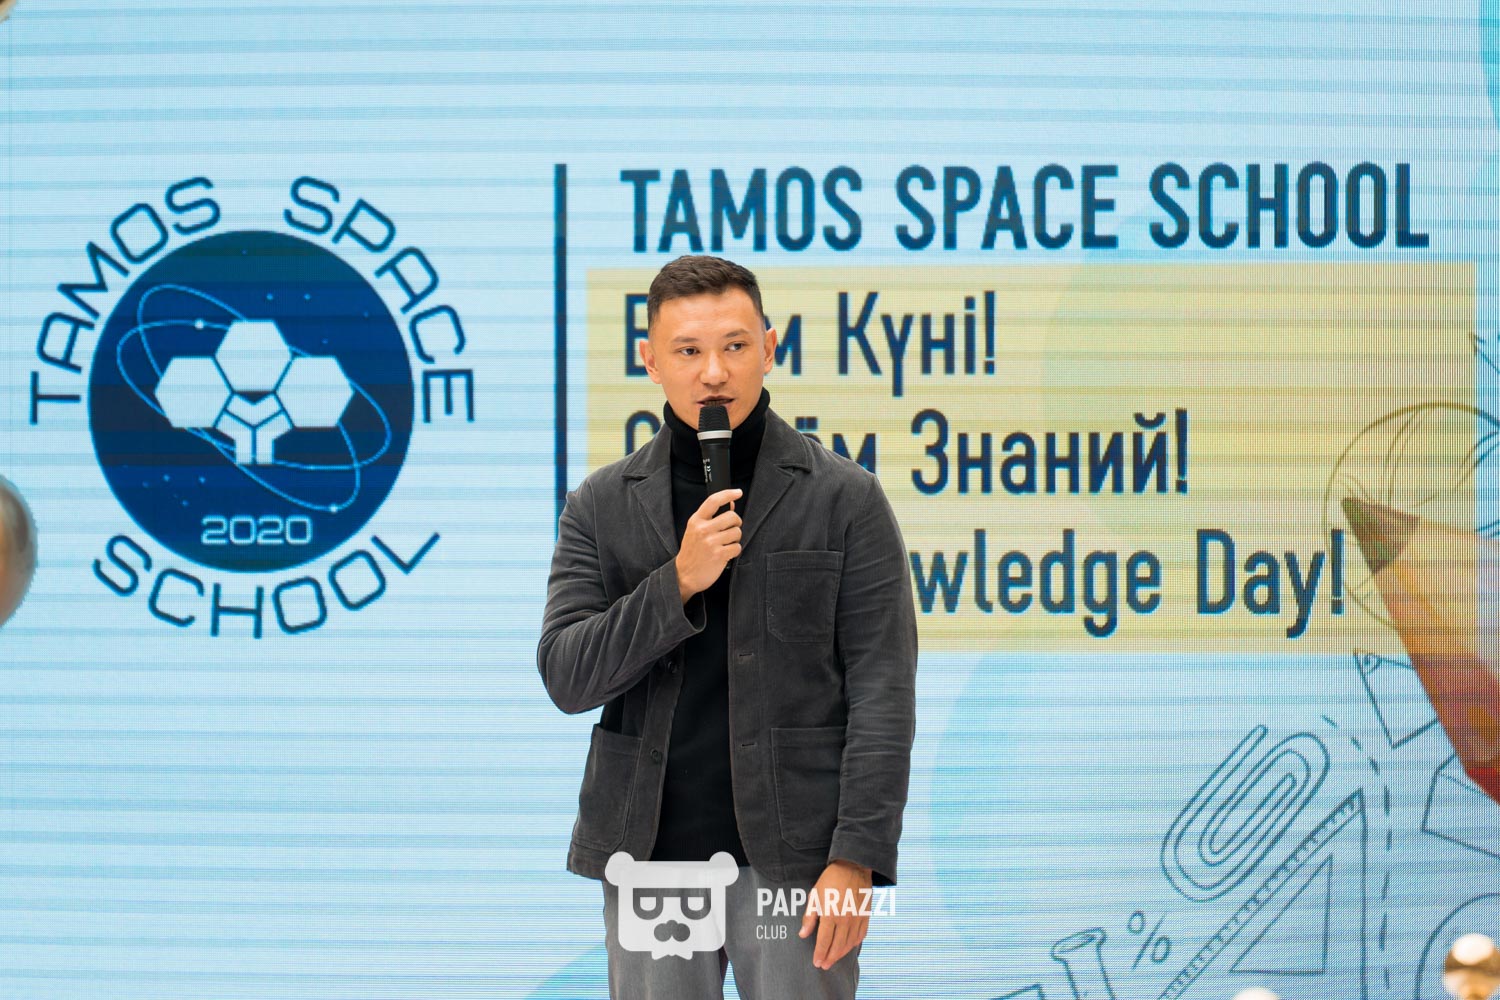 Tamos Space School